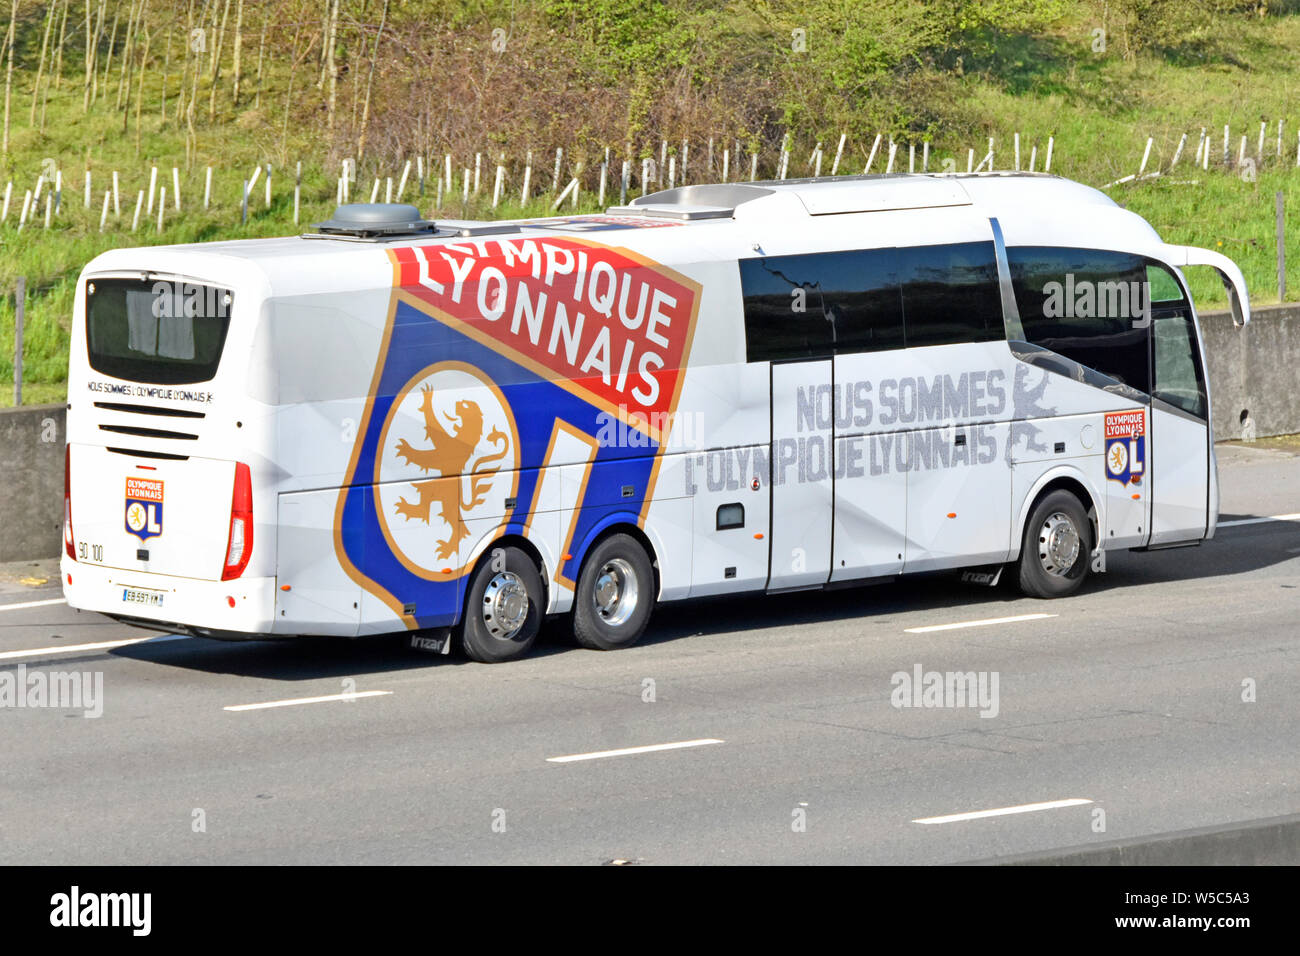 Le transport en bus pour l'Olympique Lyonnais club de football français basé à Lyon France avec l'entraîneur de l'équipe sur le logo vu circuler sur l'autoroute M25 Royaume-uni England UK Banque D'Images